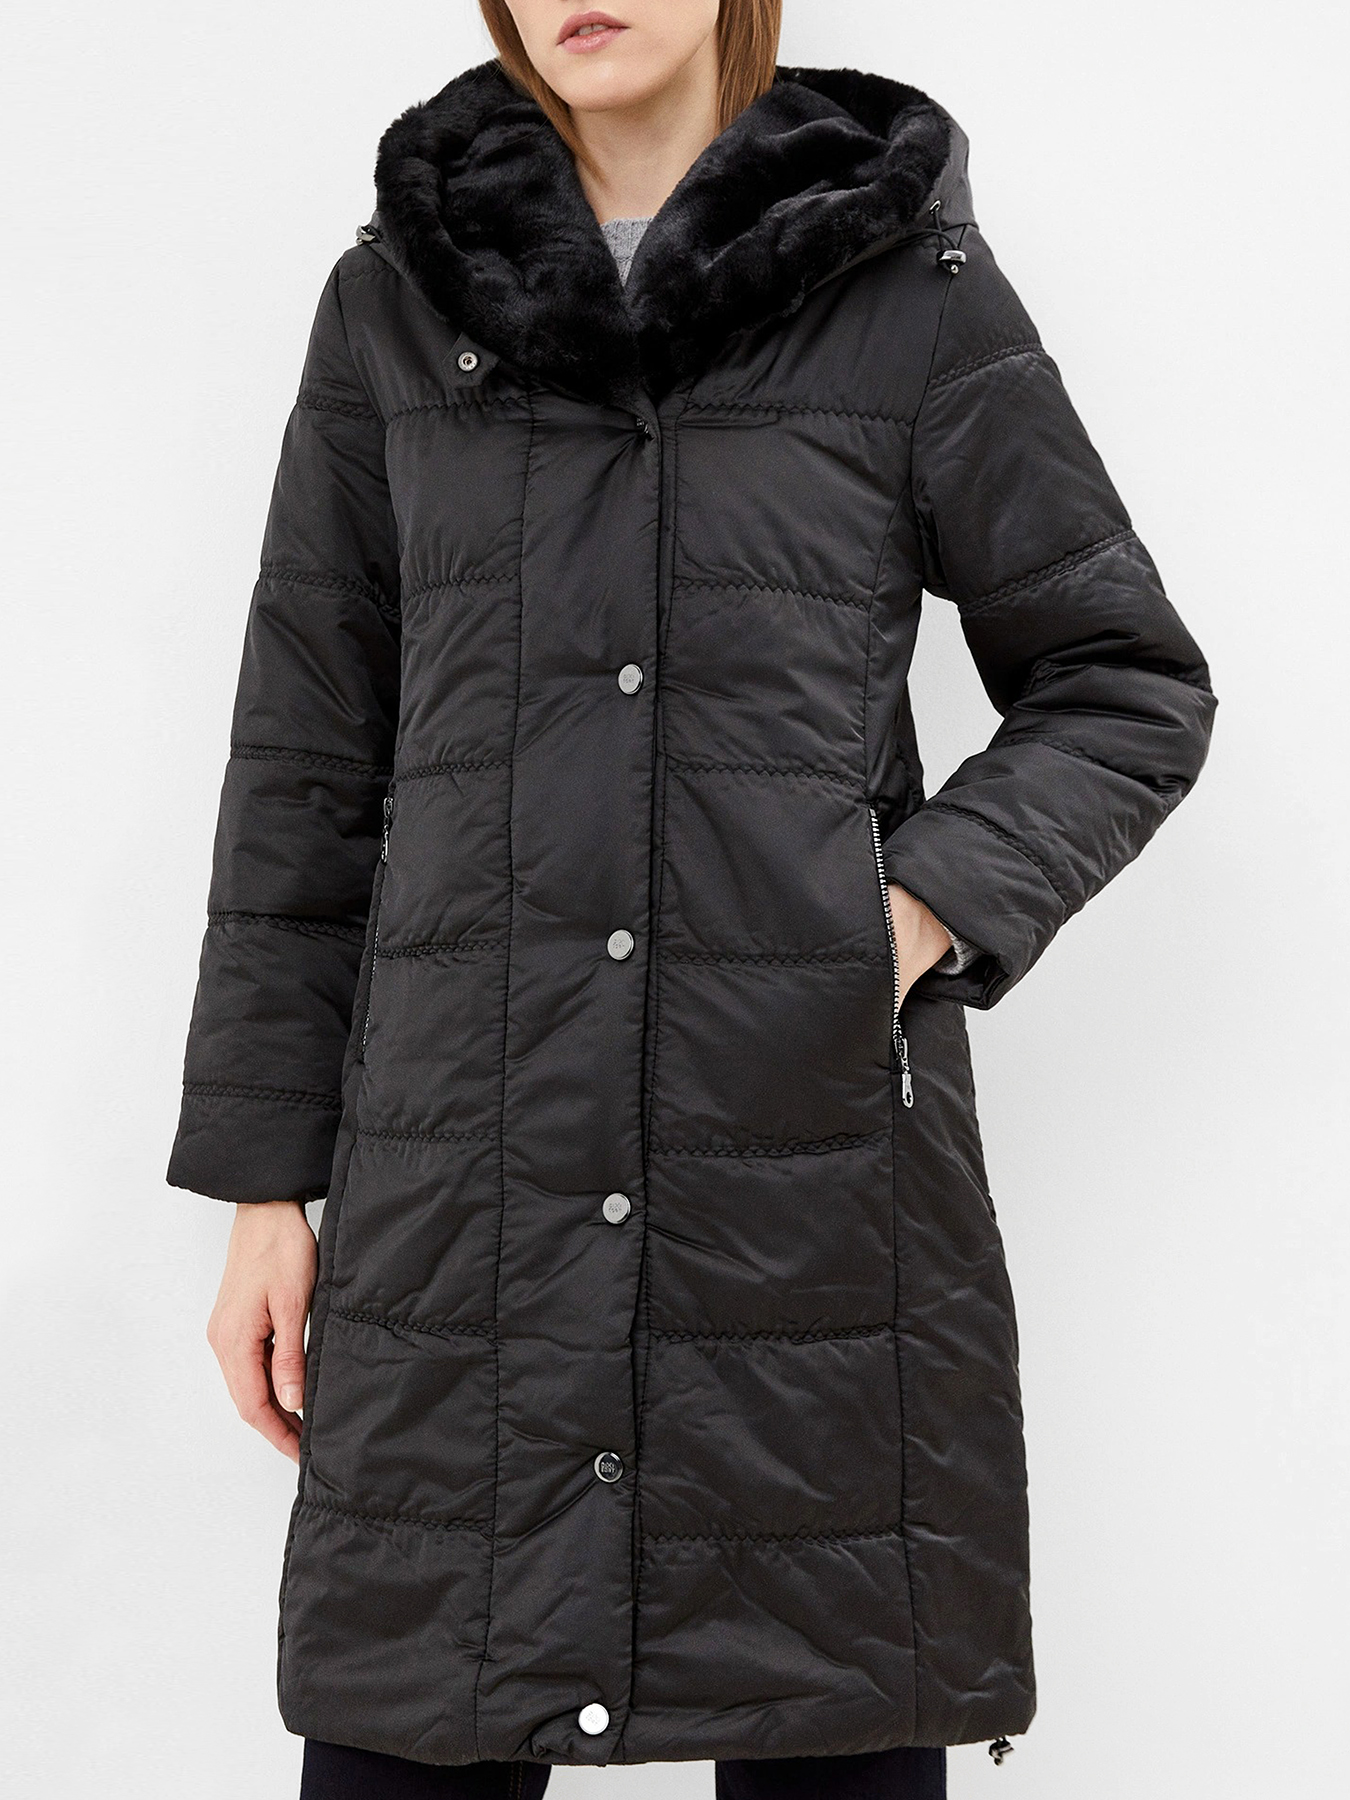 Пальто зимнее Dixi Coat 433590-020, цвет черный, размер 44